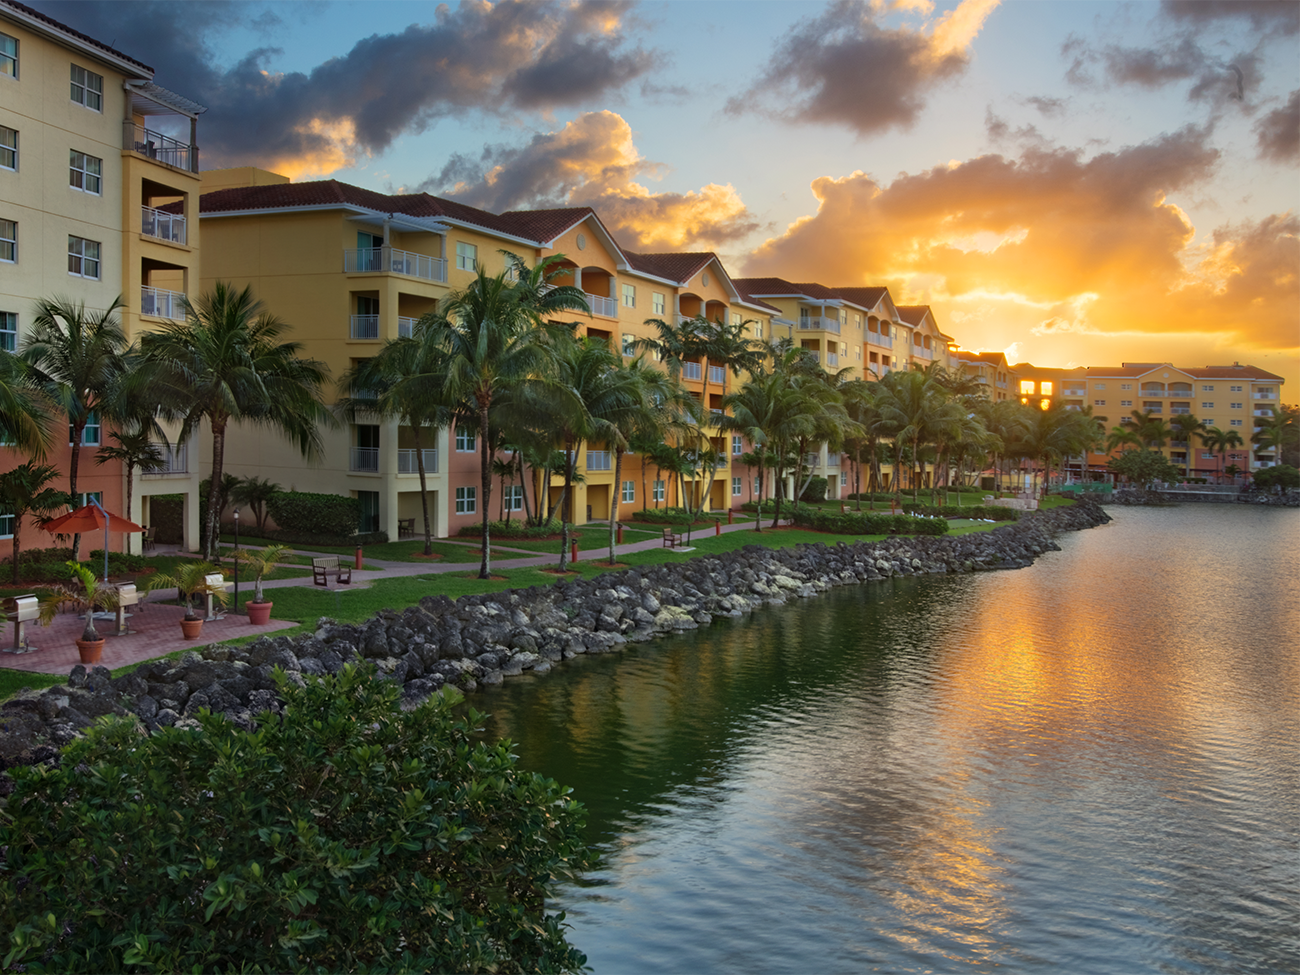 Image of Marriott's Villas at Doral in Miami.